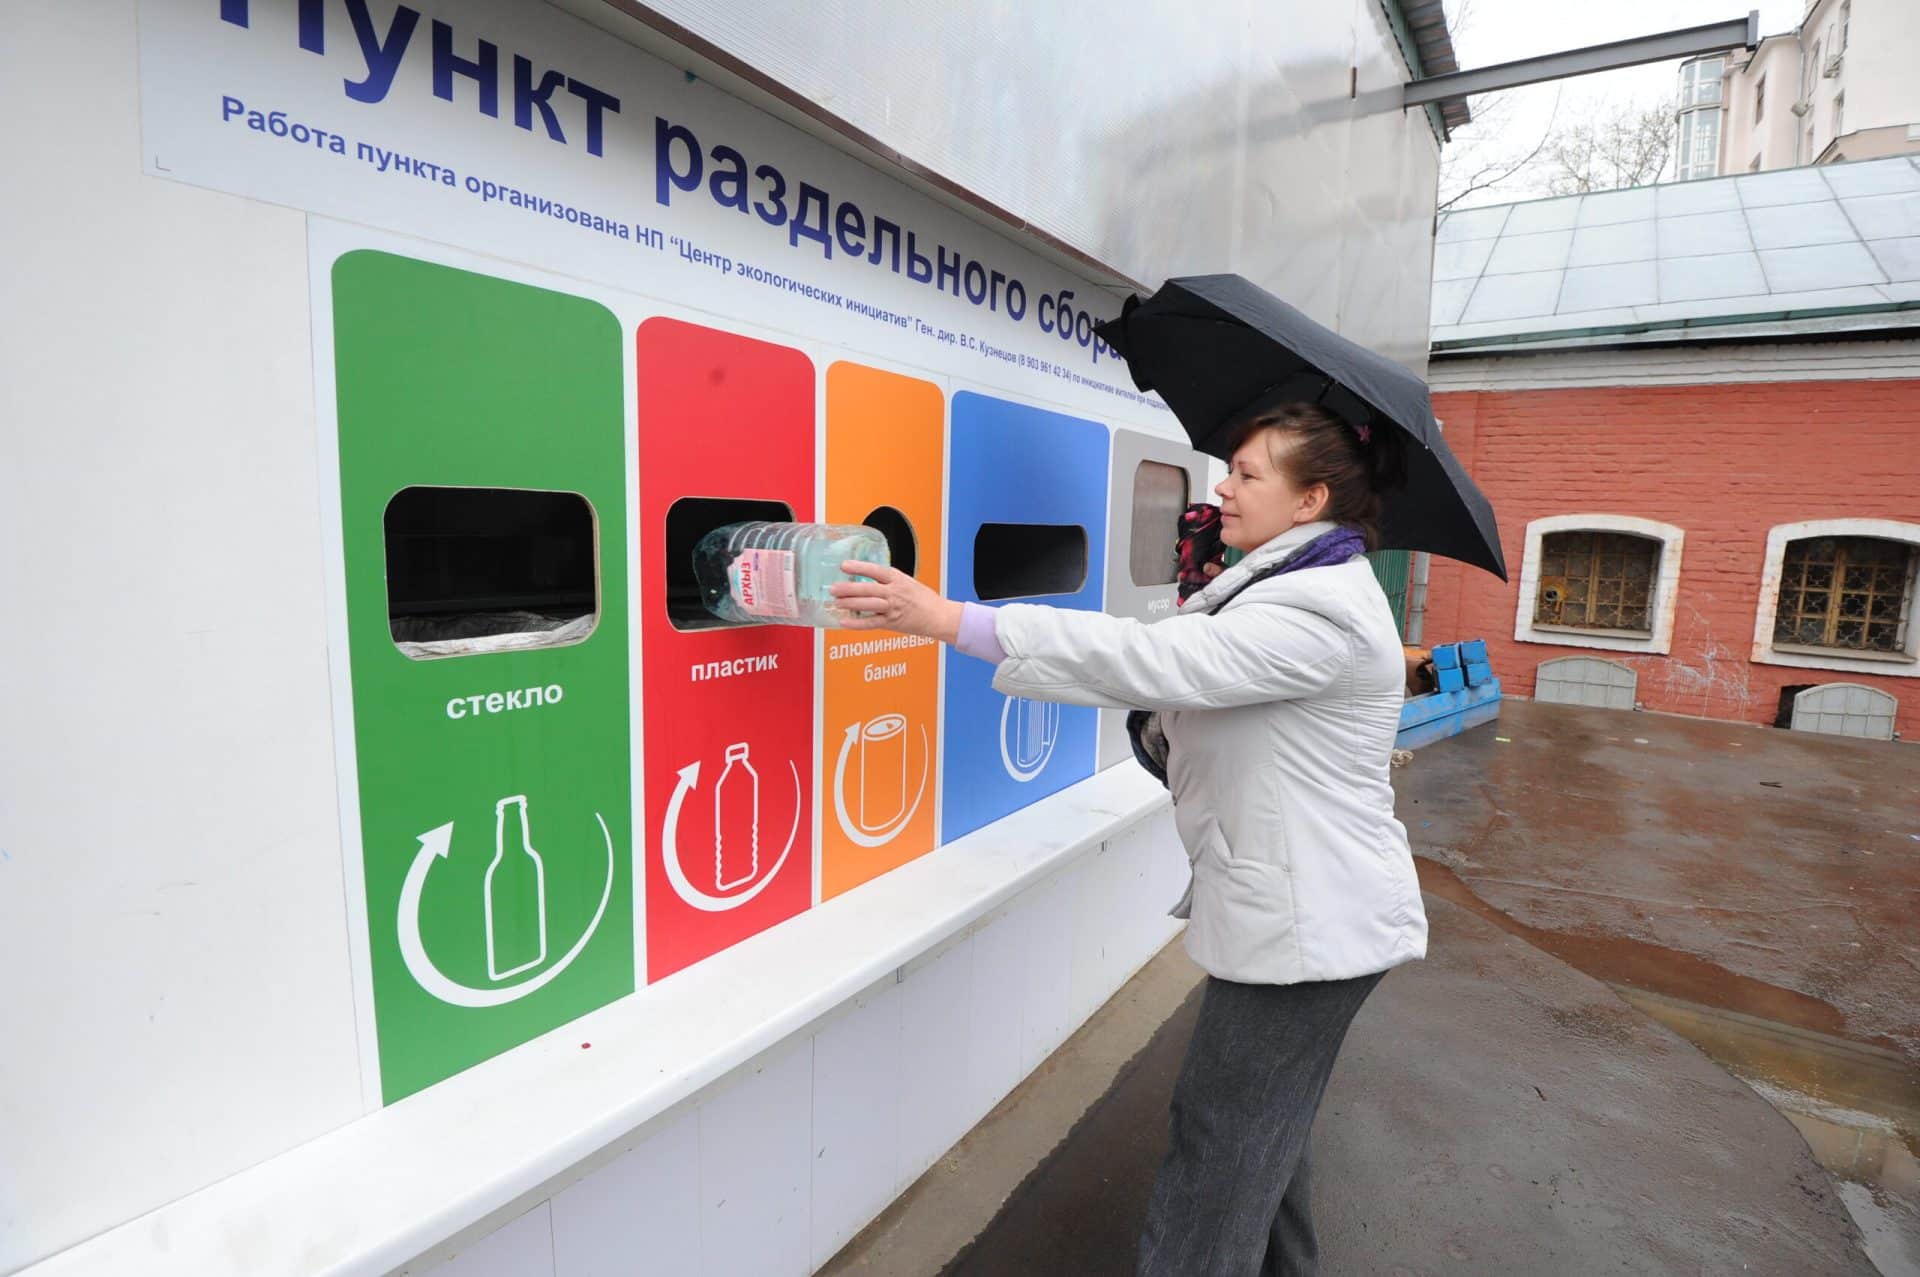 Прием стеклотары в Санкт-Петербурге: 150 пунктов утилизации